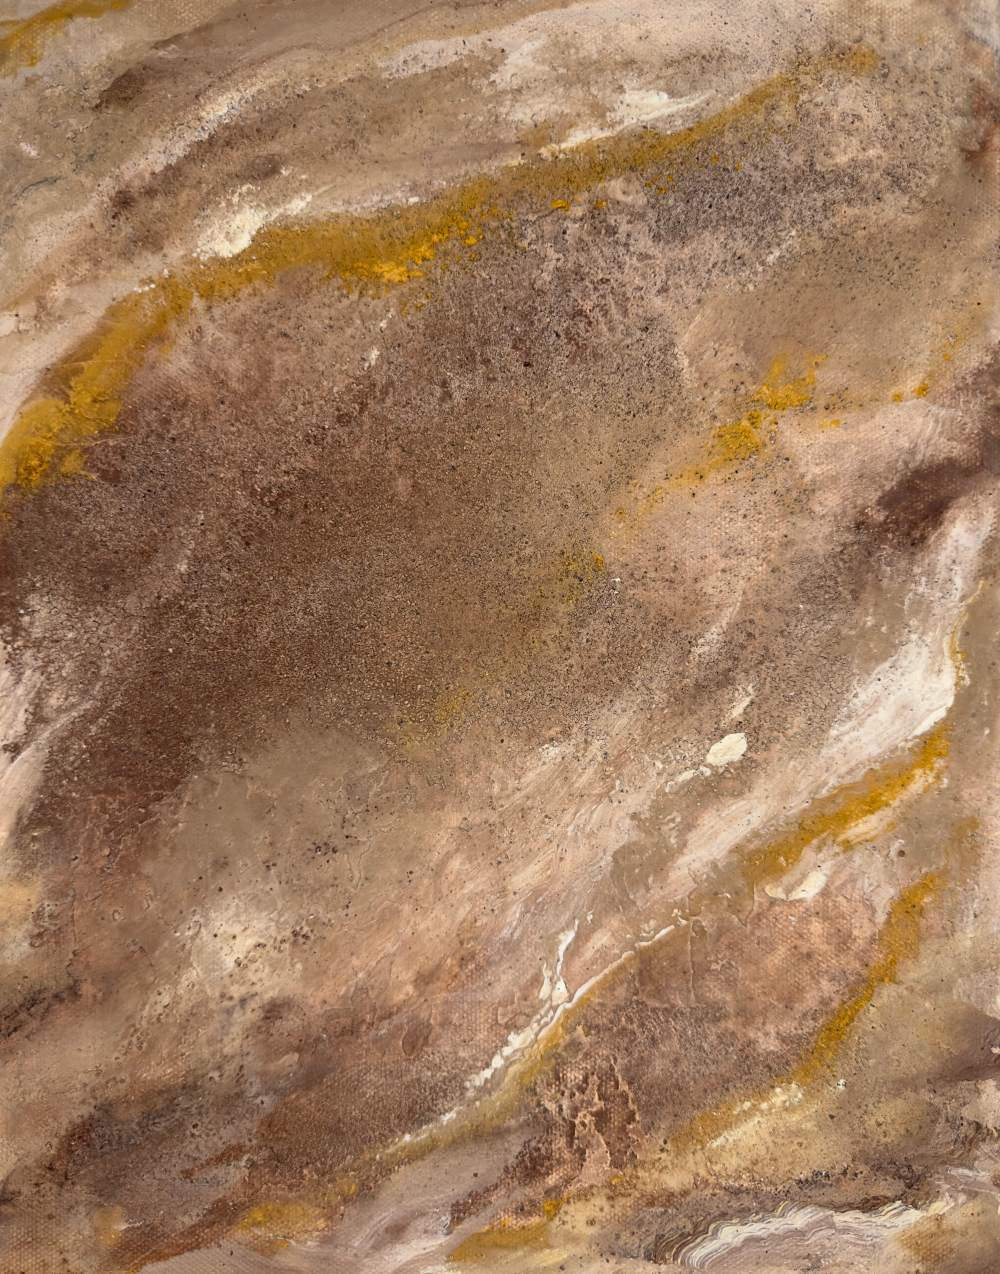 Valles Marineres III